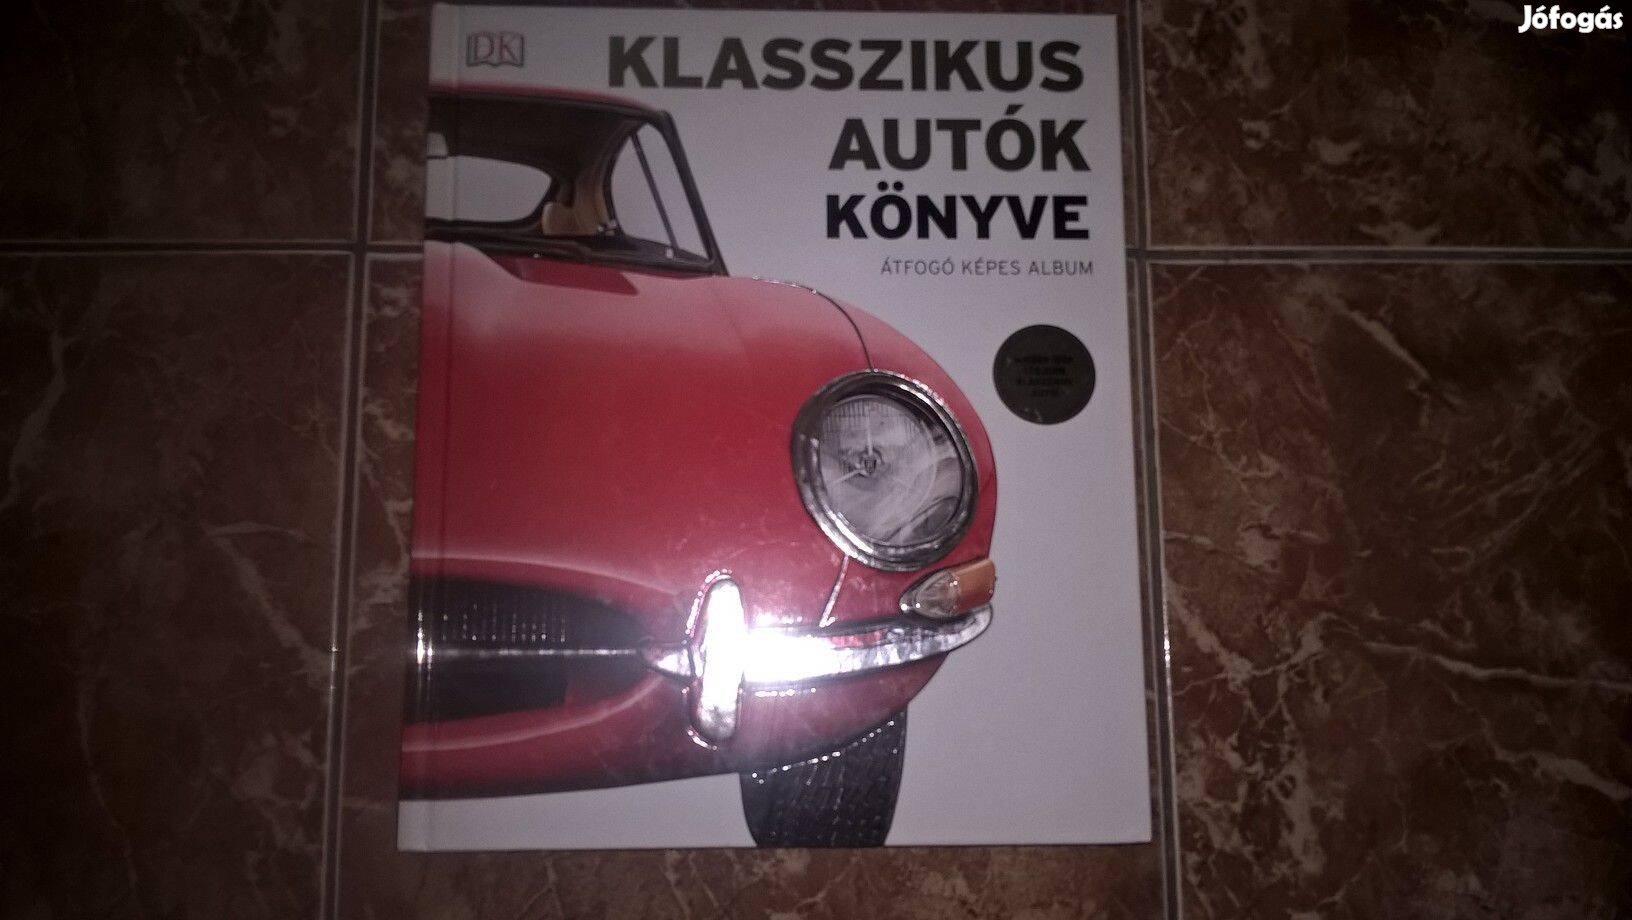 Klasszikus autók könyve